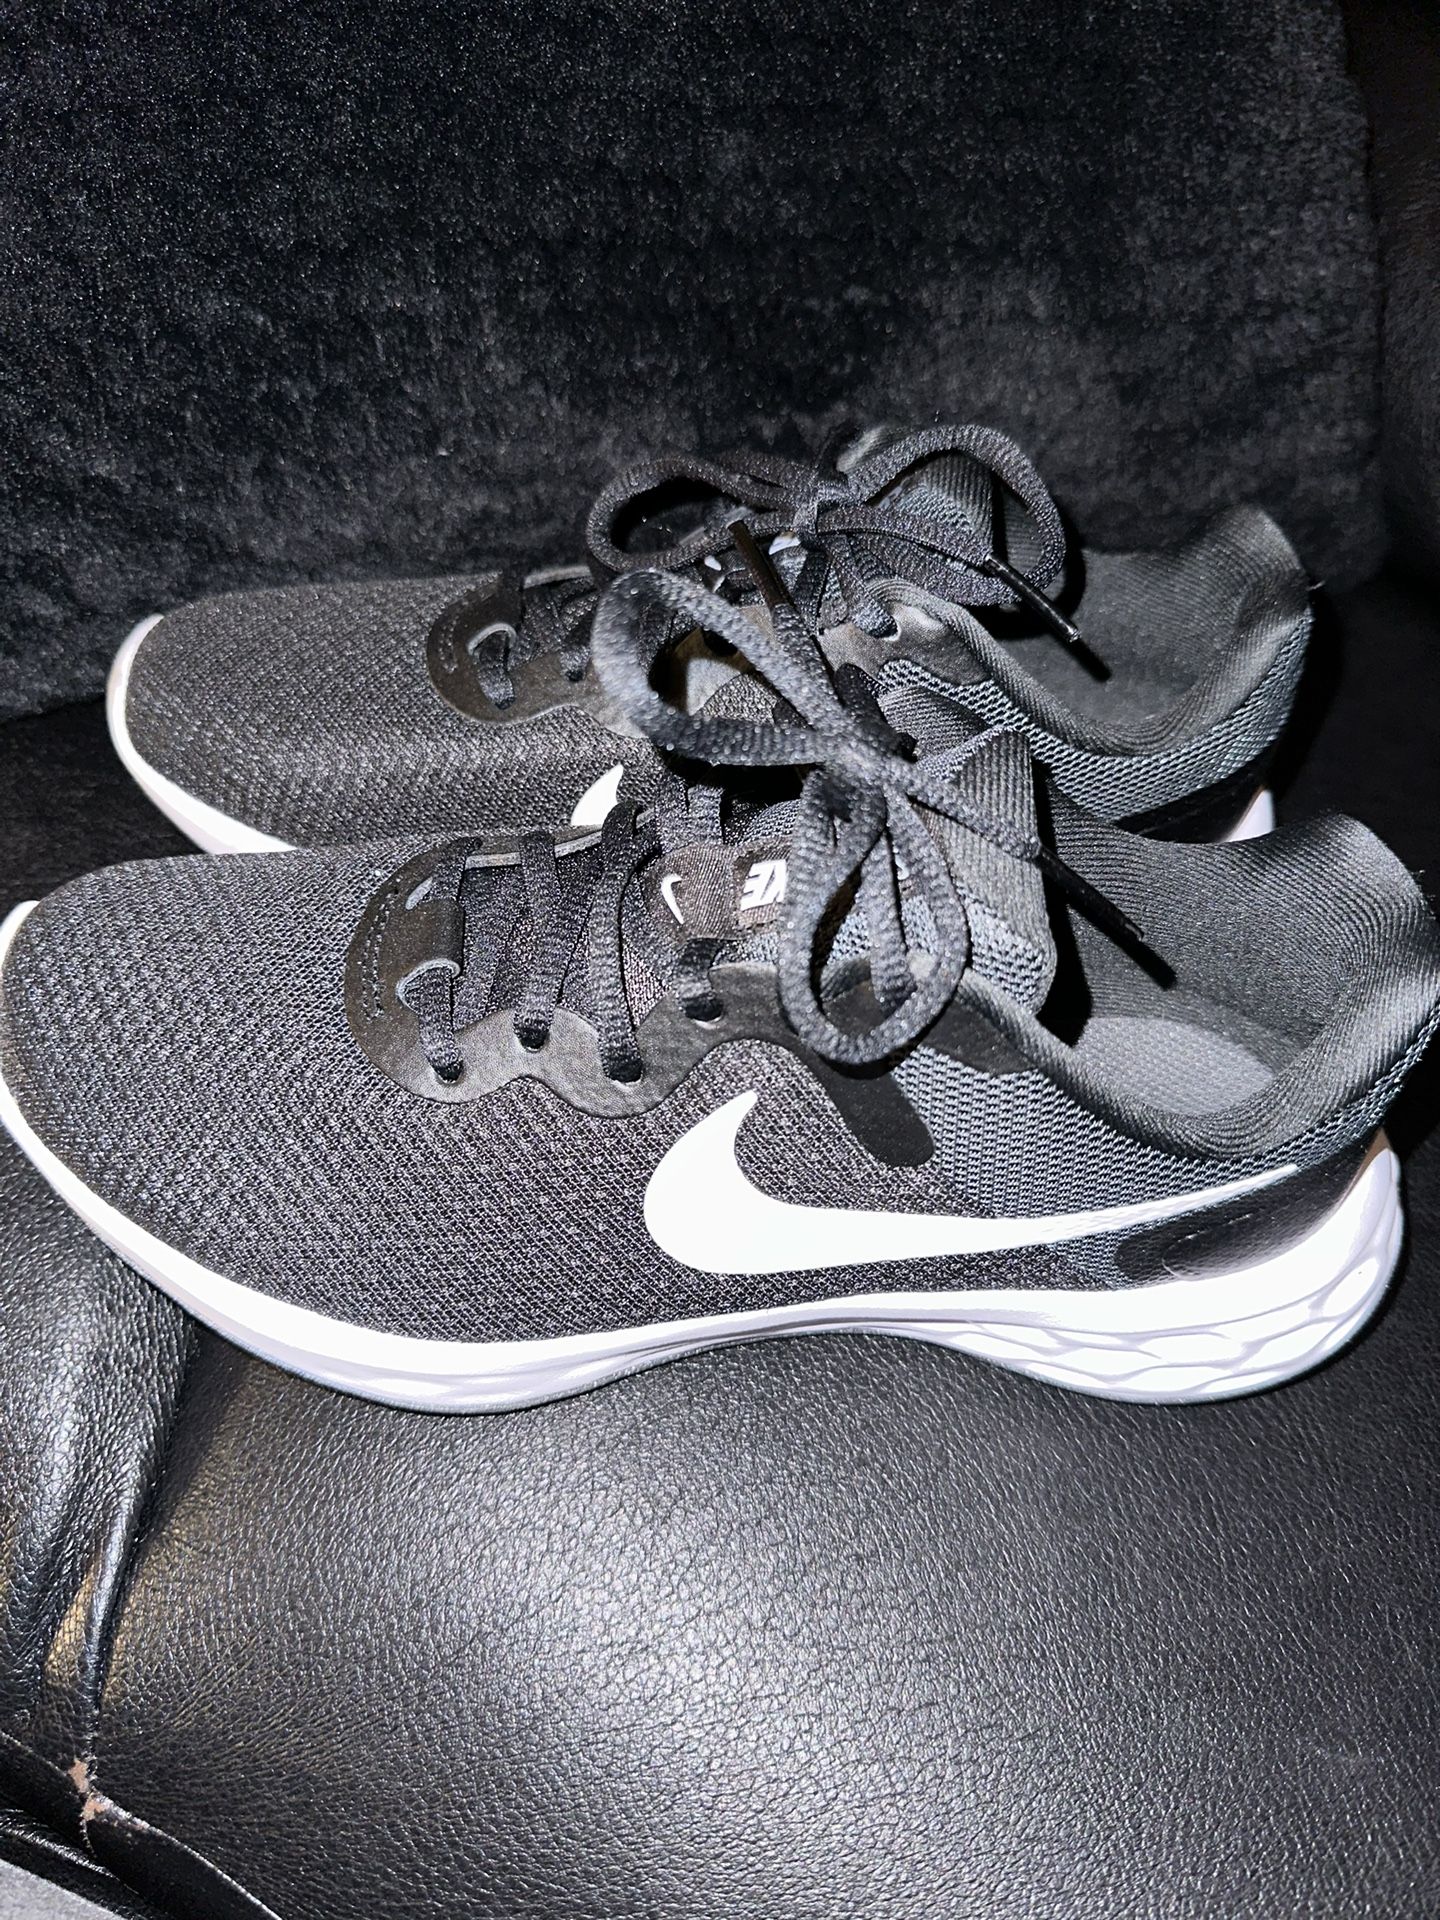 Women’s Nike Running Shoes